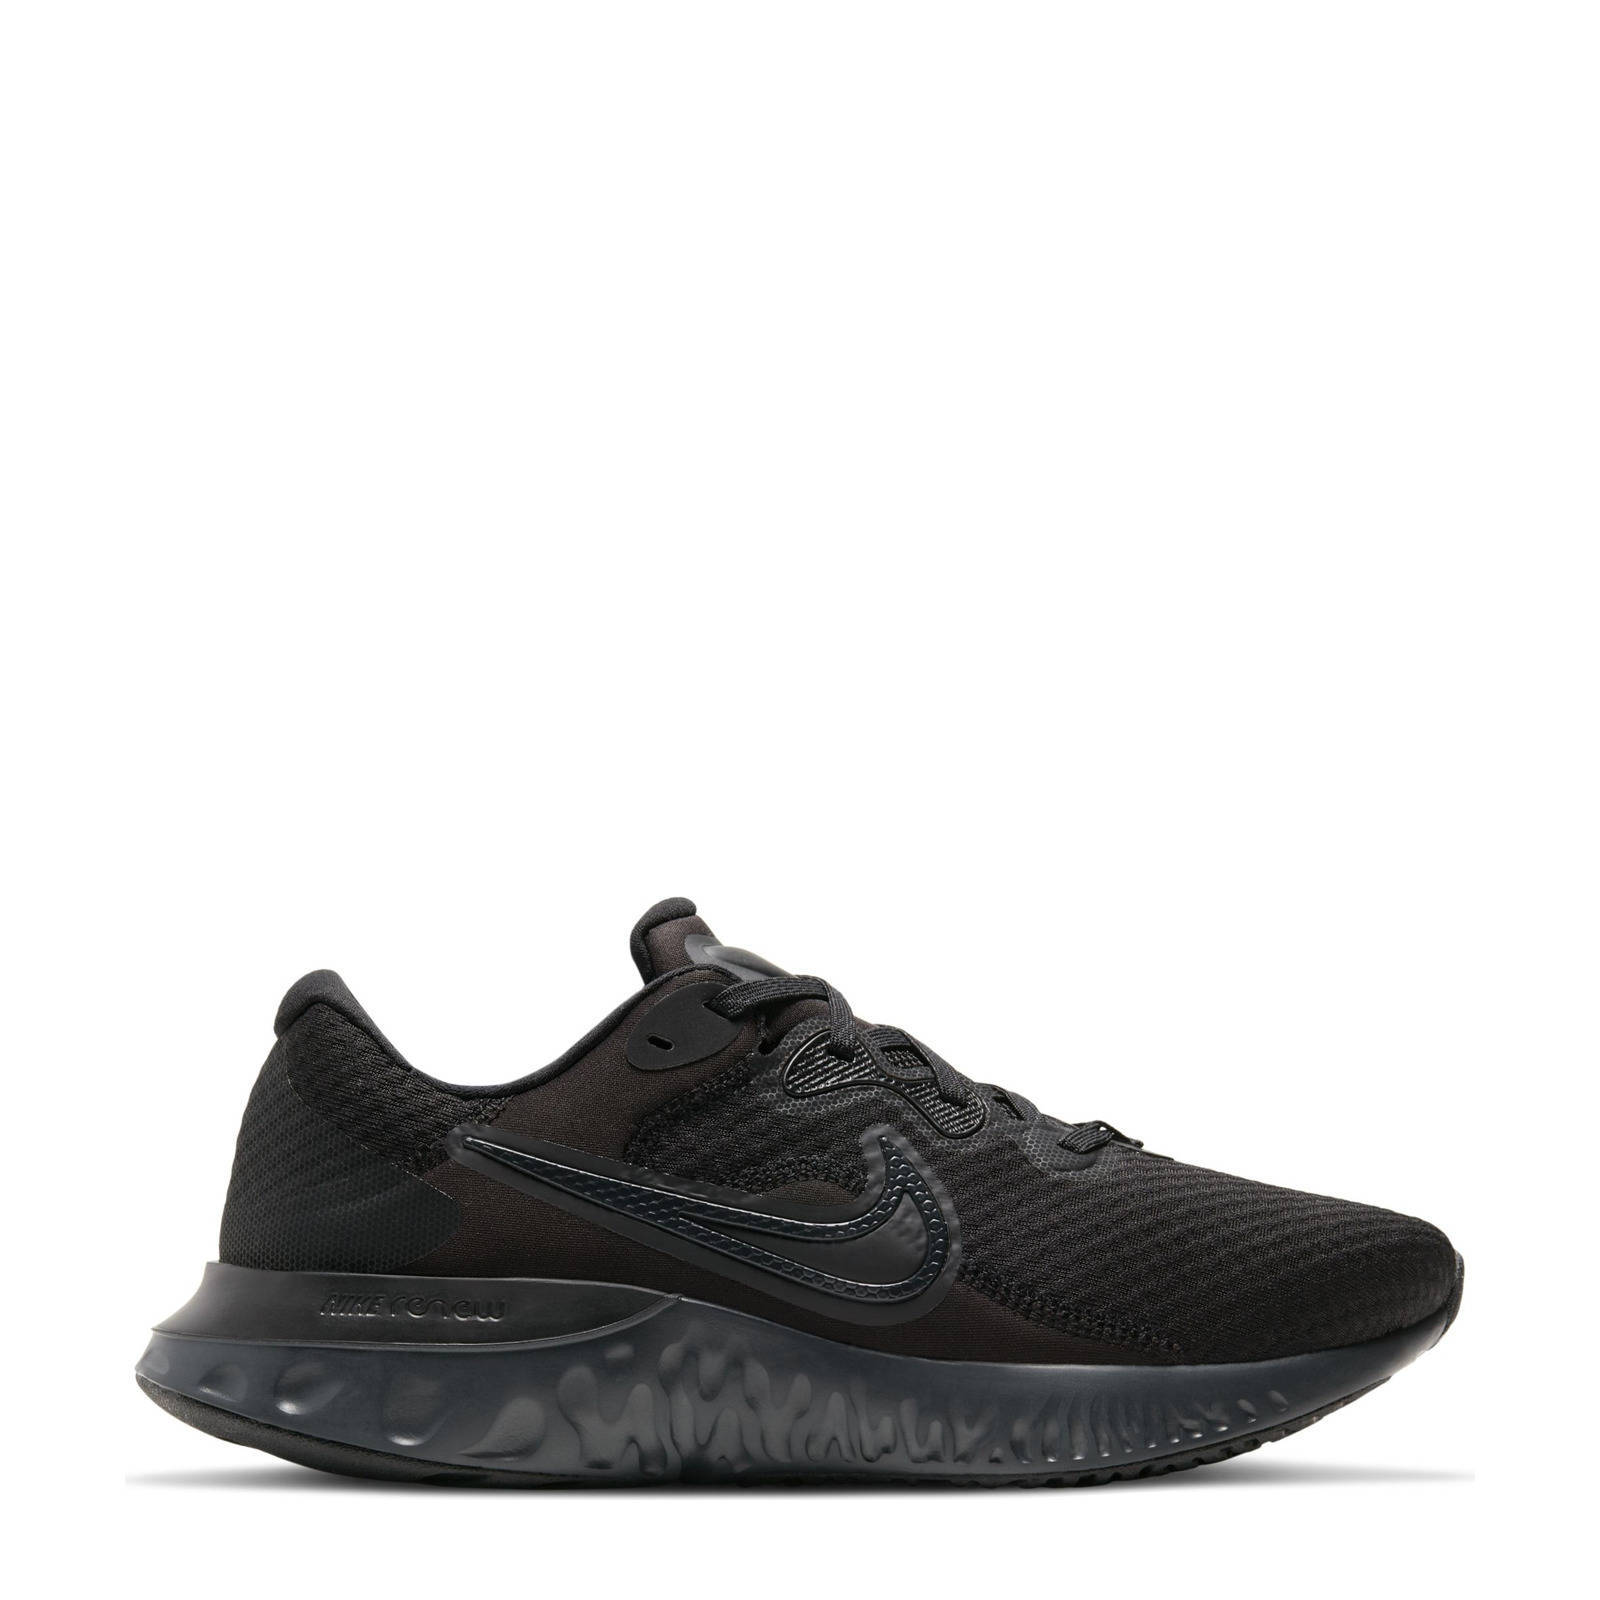 Nike Renew Run 2 hardloopschoenen zwart/antraciet online kopen